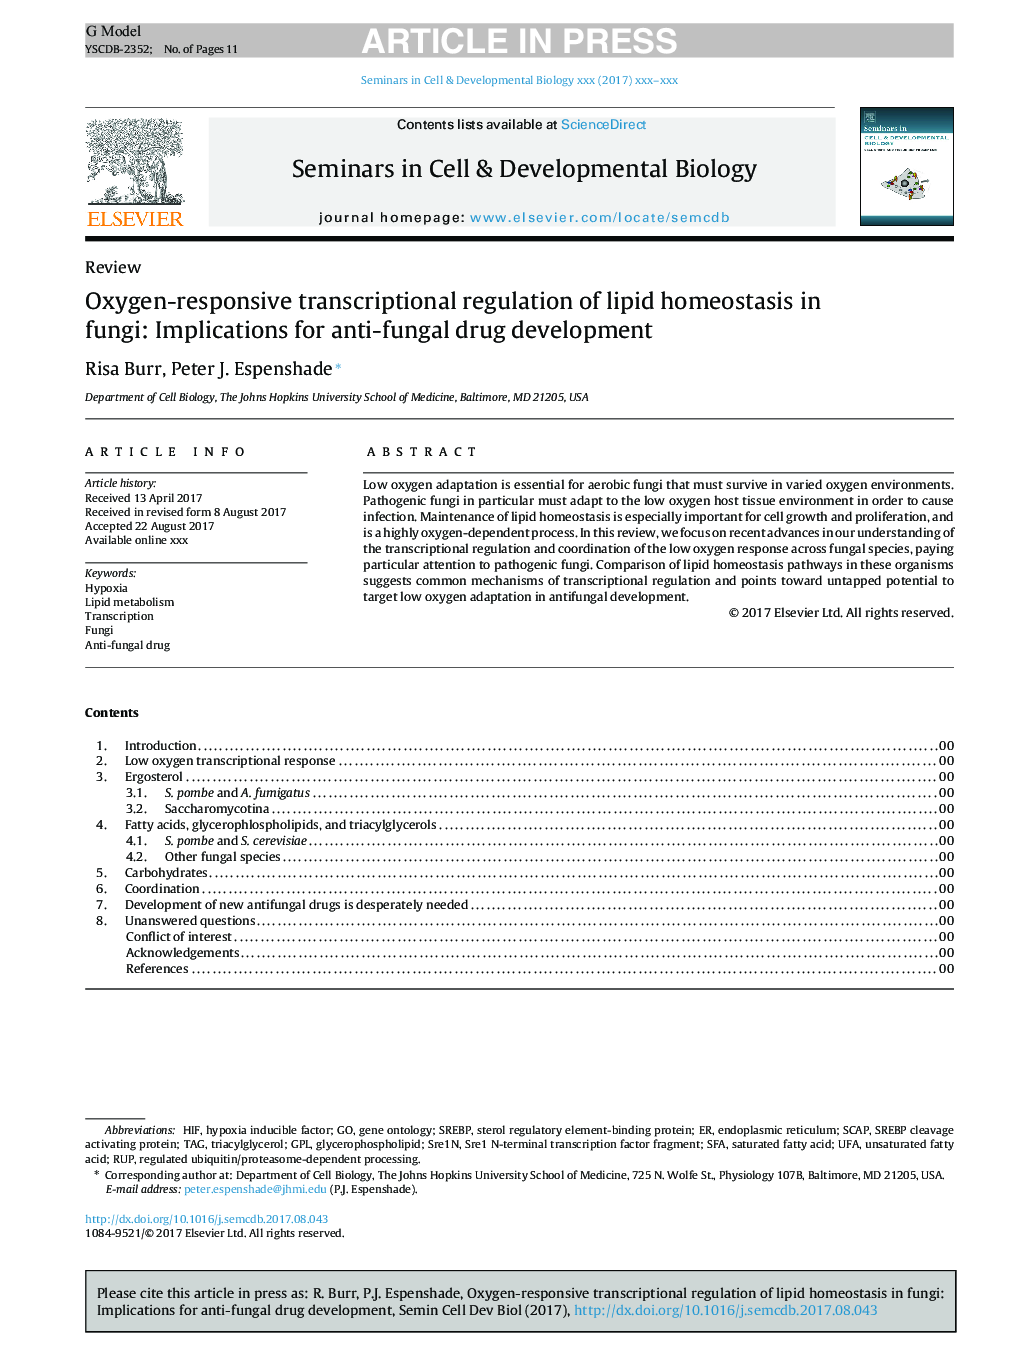 مقررات رونویسی واکنش اکسیژن از هوموستاز لیپید در قارچ: اثرات جانبی برای توسعه داروهای ضد قارچی 